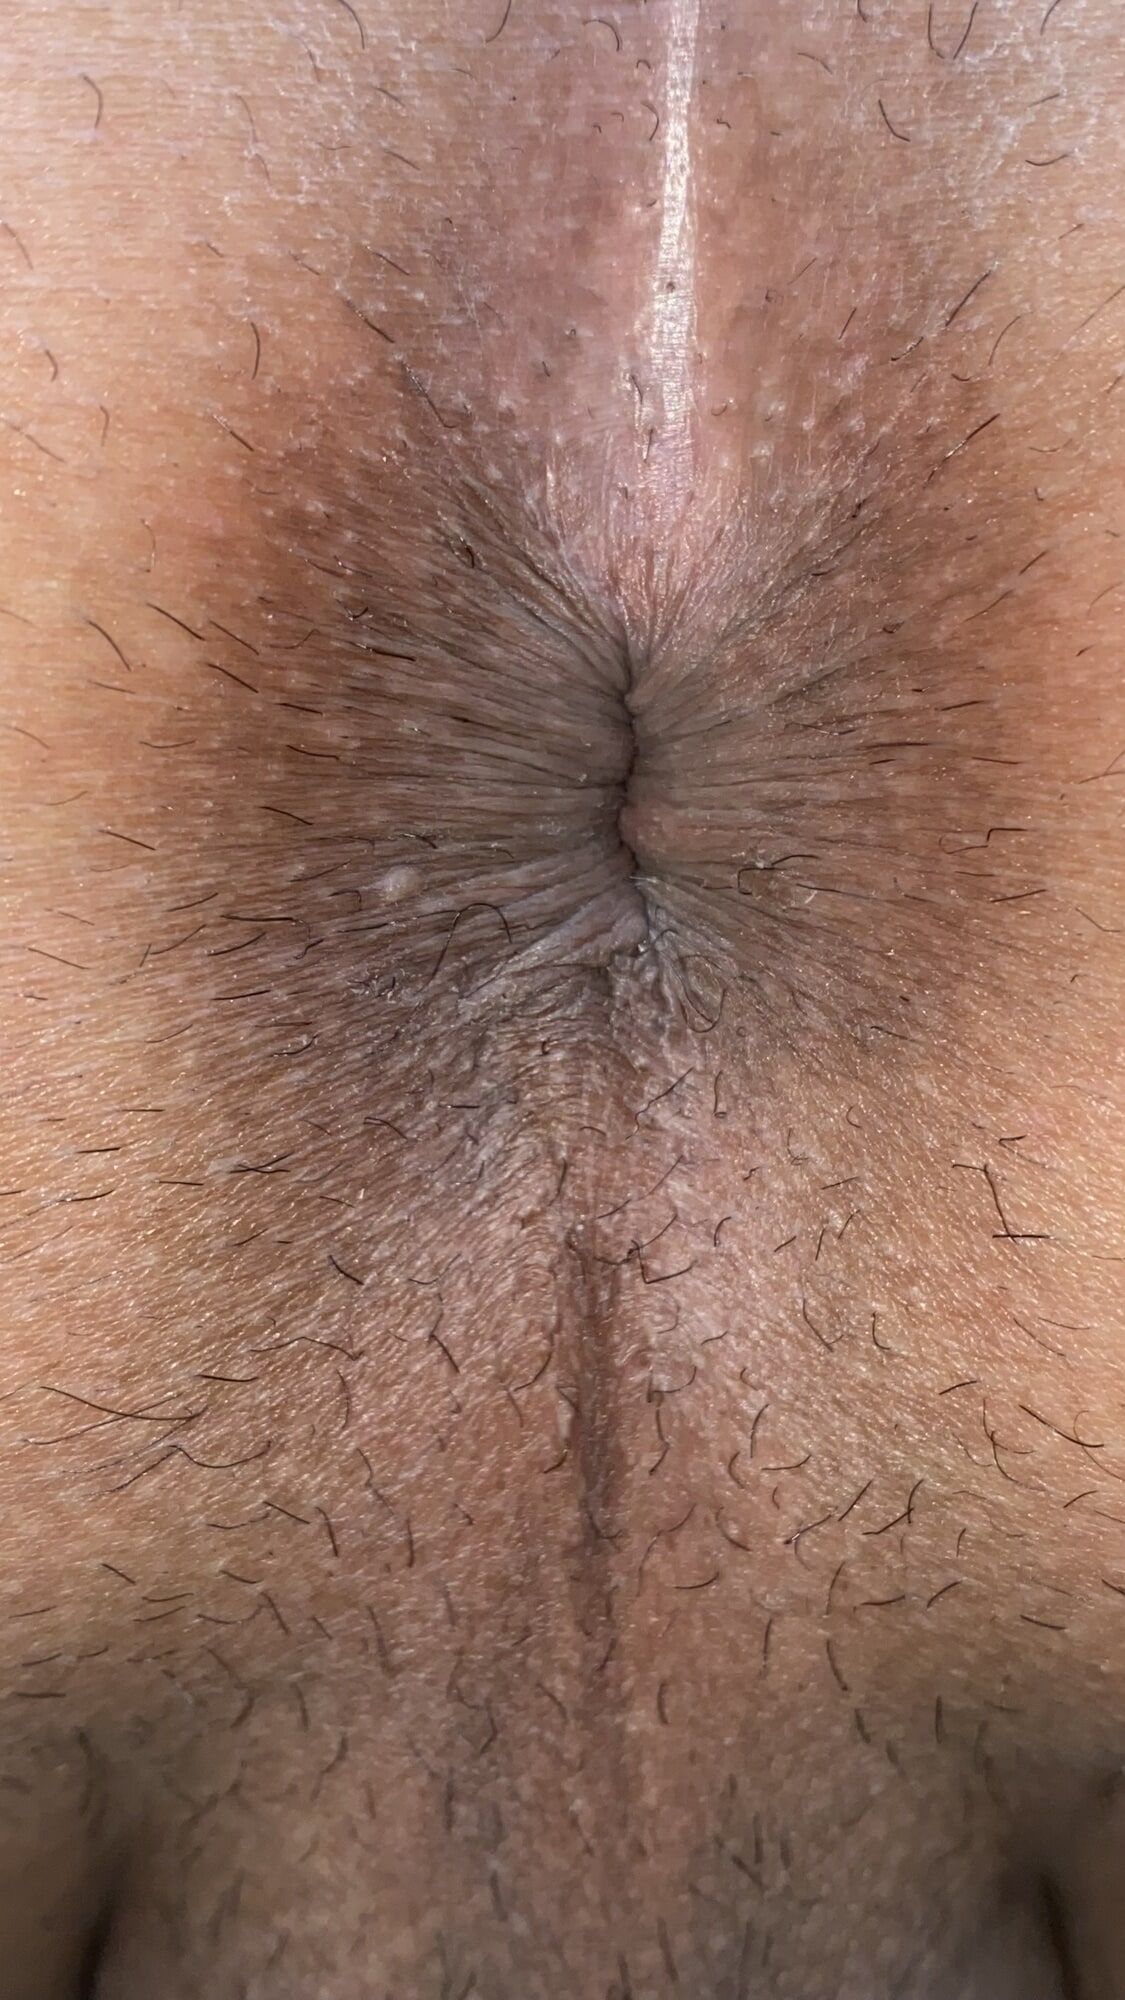 Close-up of a man's anus #35